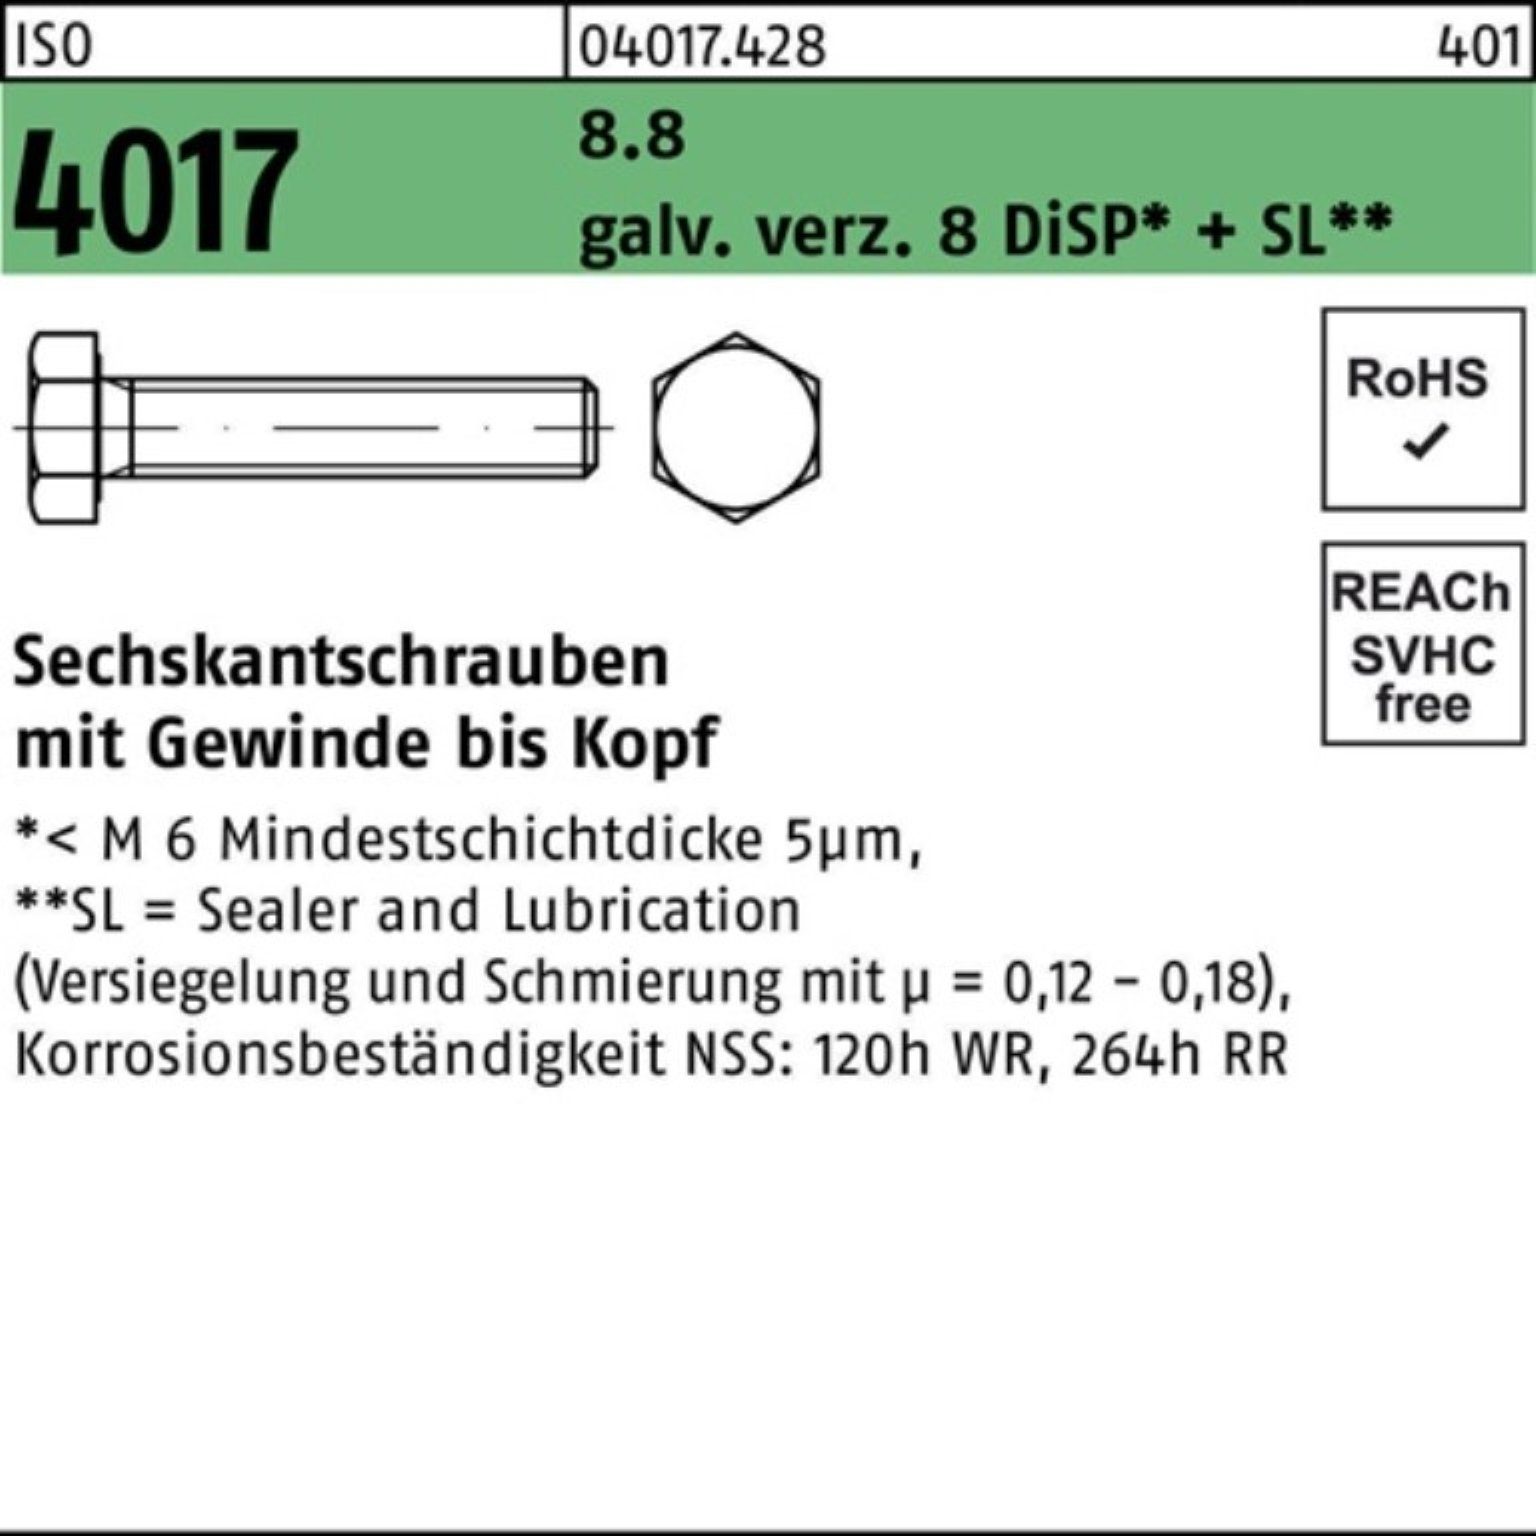 Bufab Sechskantschraube 10 8 M3x 8.8 Pack galv.verz. ISO DiSP+ 4017 VG Sechskantschraube 500er